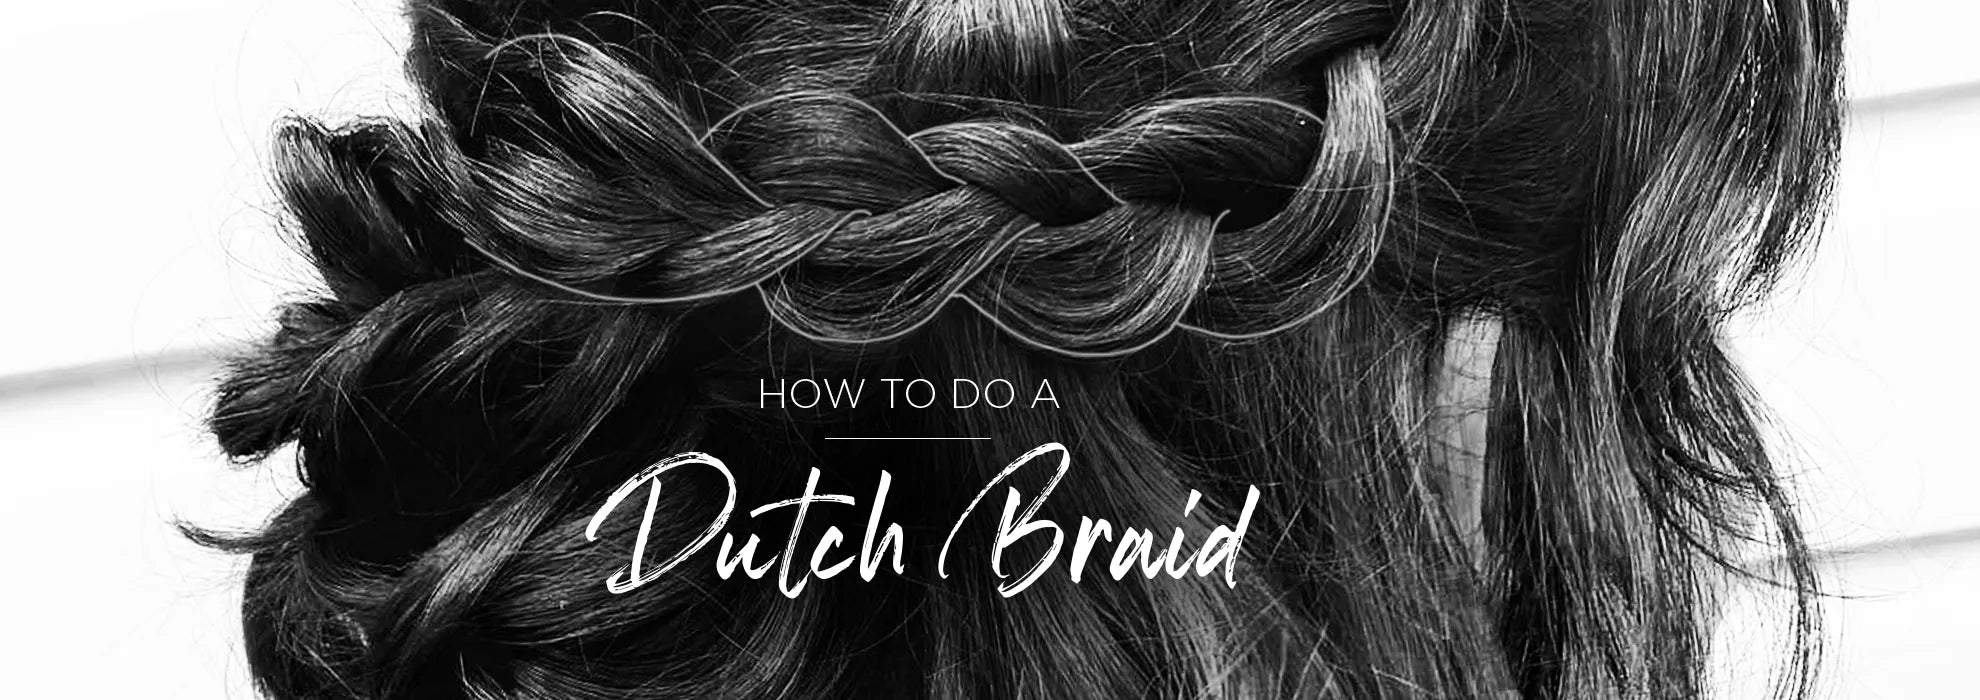 How to do a dutch braid, Dutch braid tutorial